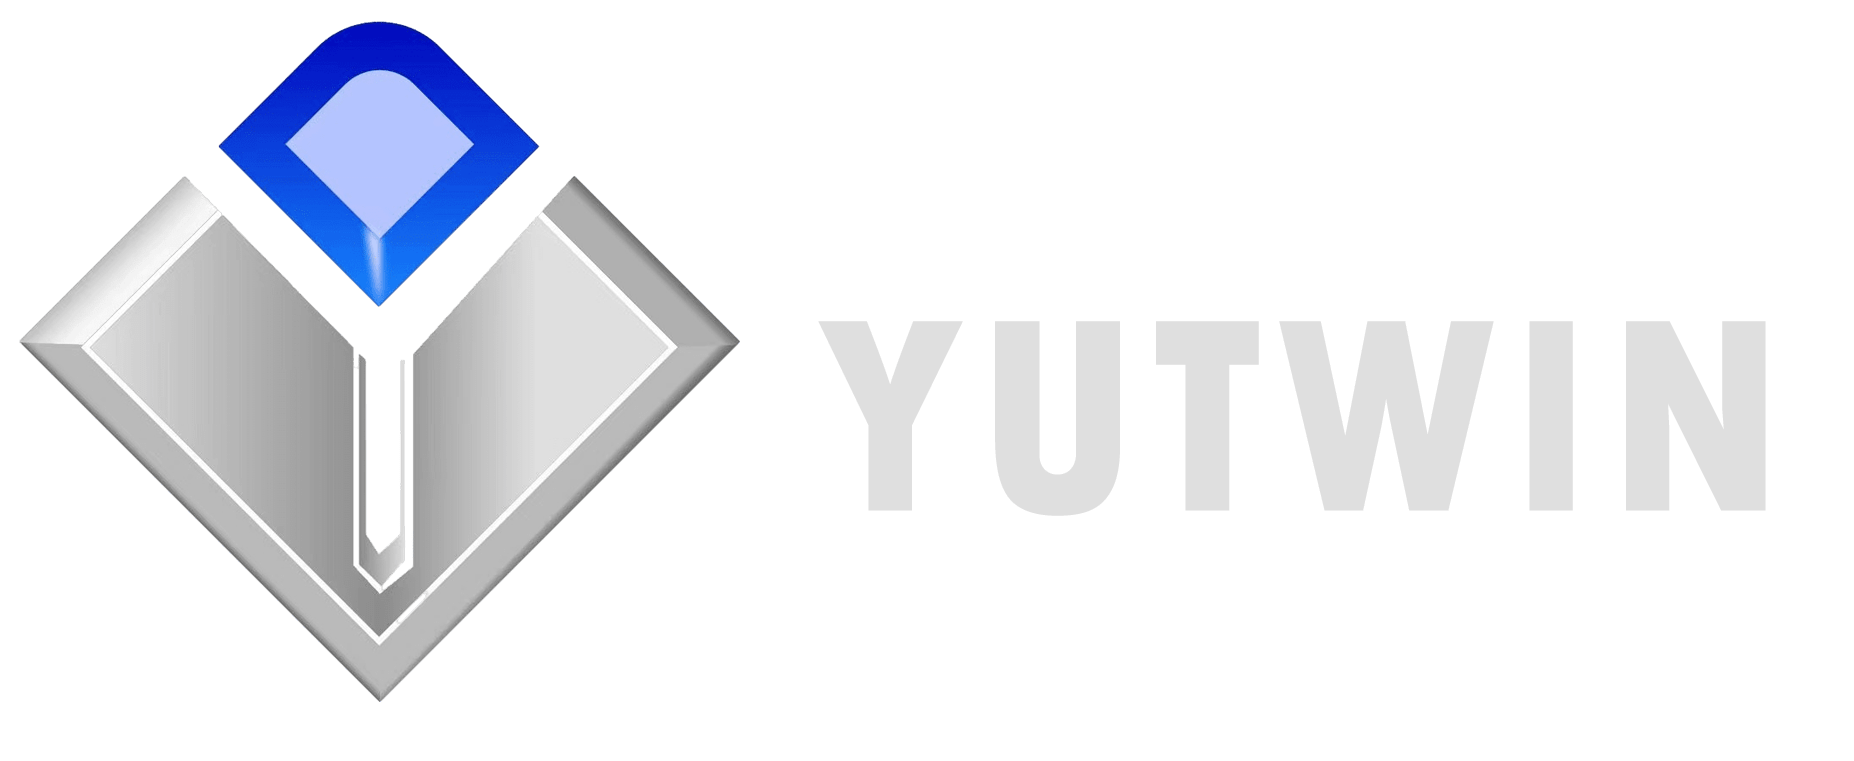 Nuevos logotipos de materiales de Yutwin